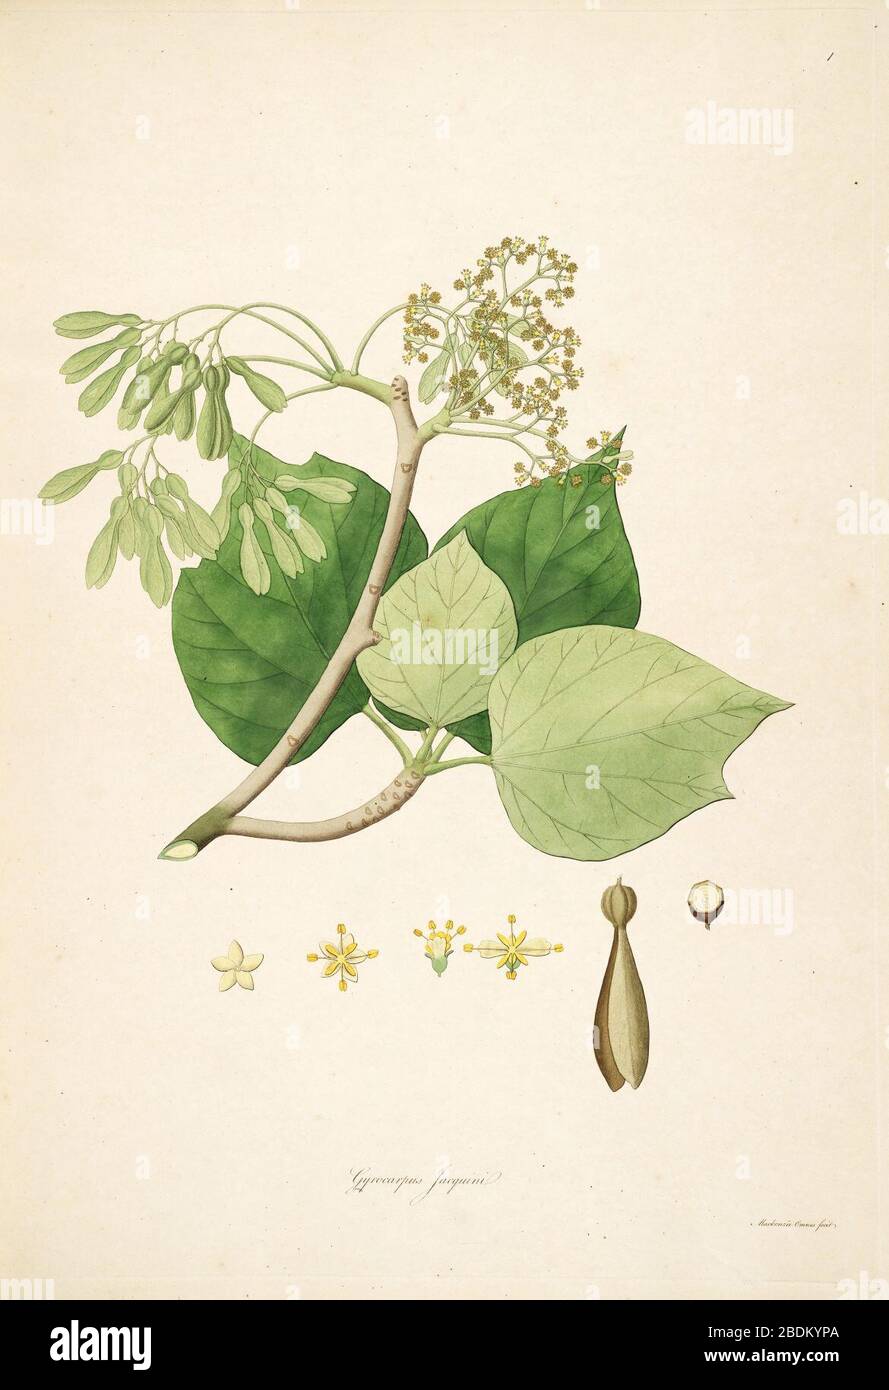 Gyrocarpus jacquinii. Stock Photo